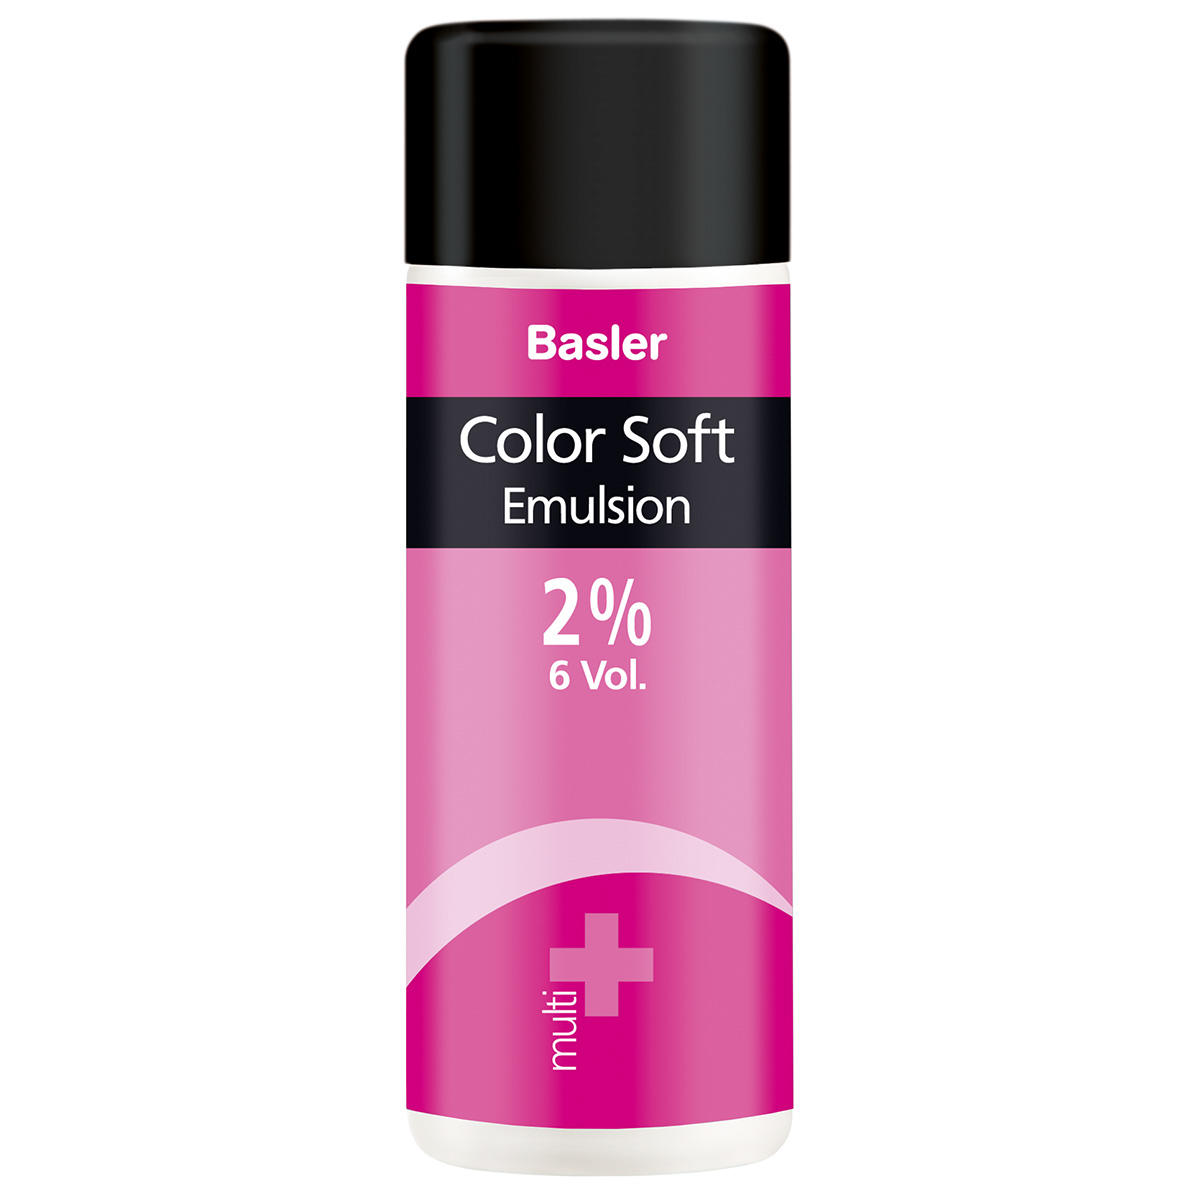 Basler Color Soft multi Emulsion 2 % - 2 vol., Bouteille 200 ml - 1